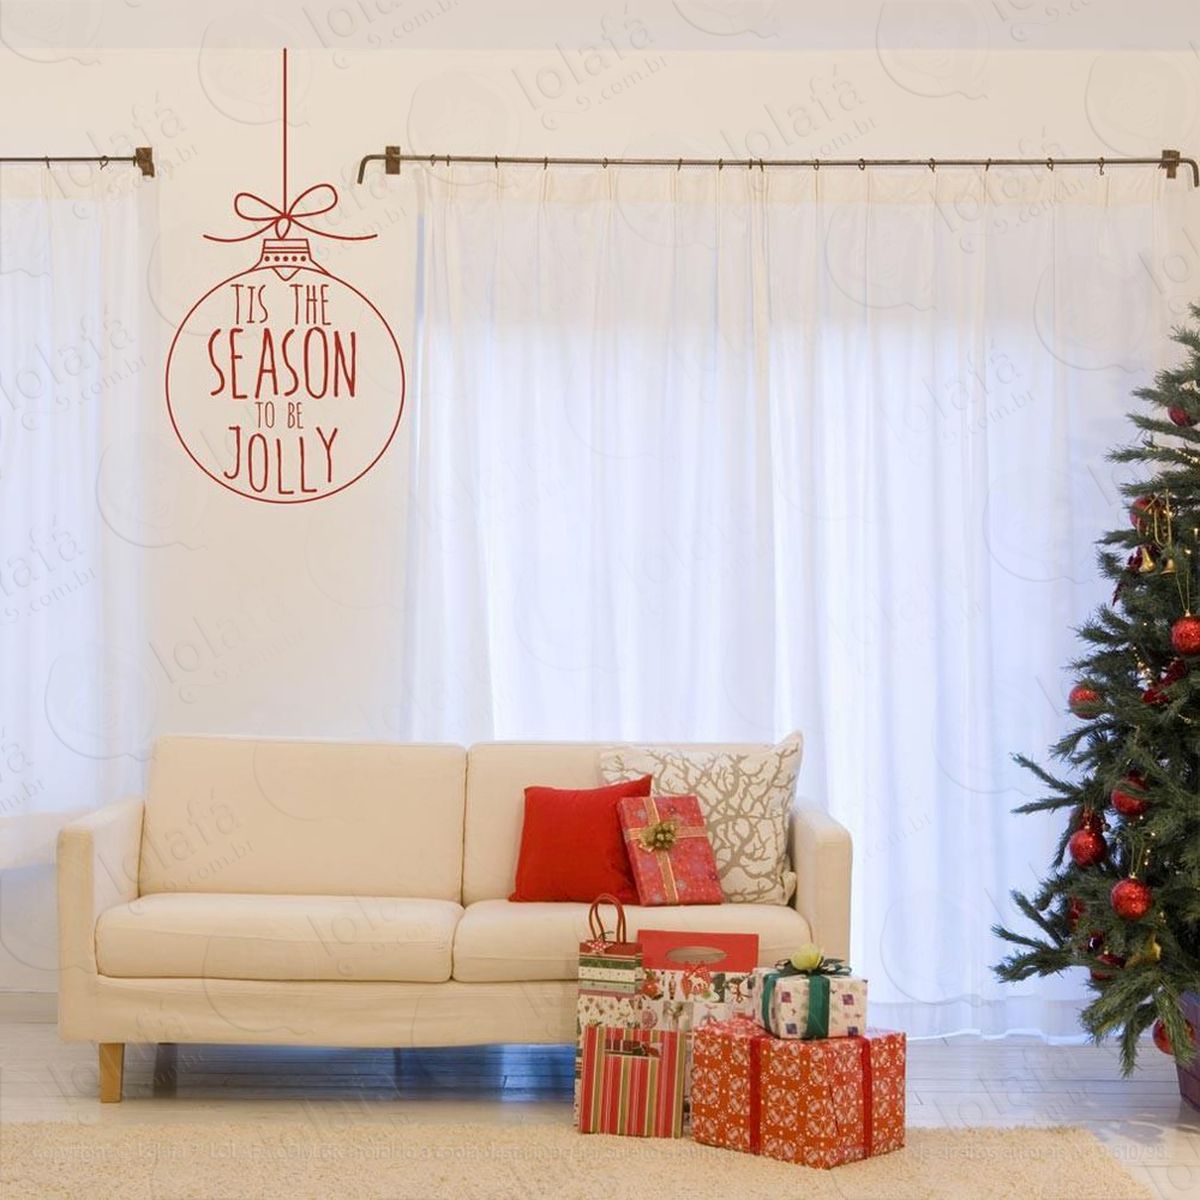 bola holiday adesivo de natal para vitrine, parede, porta de vidro - decoração natalina mod:47